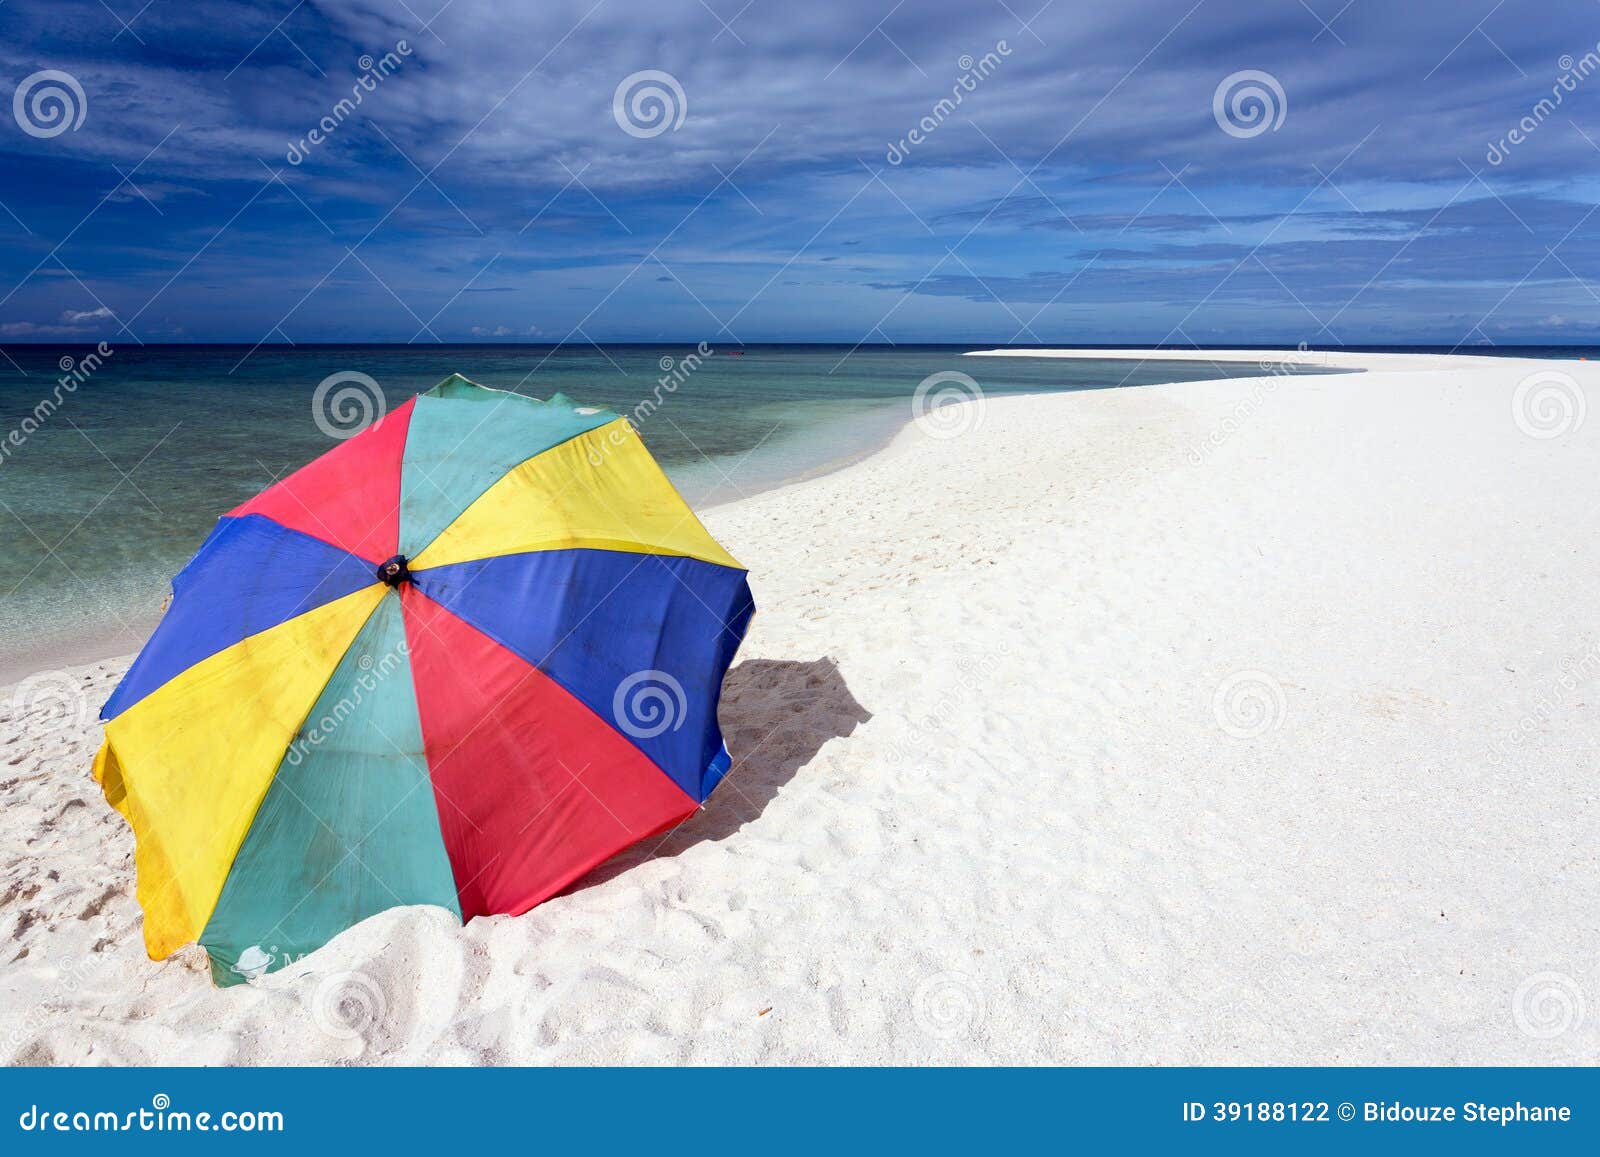 sunshade on tropical white beach